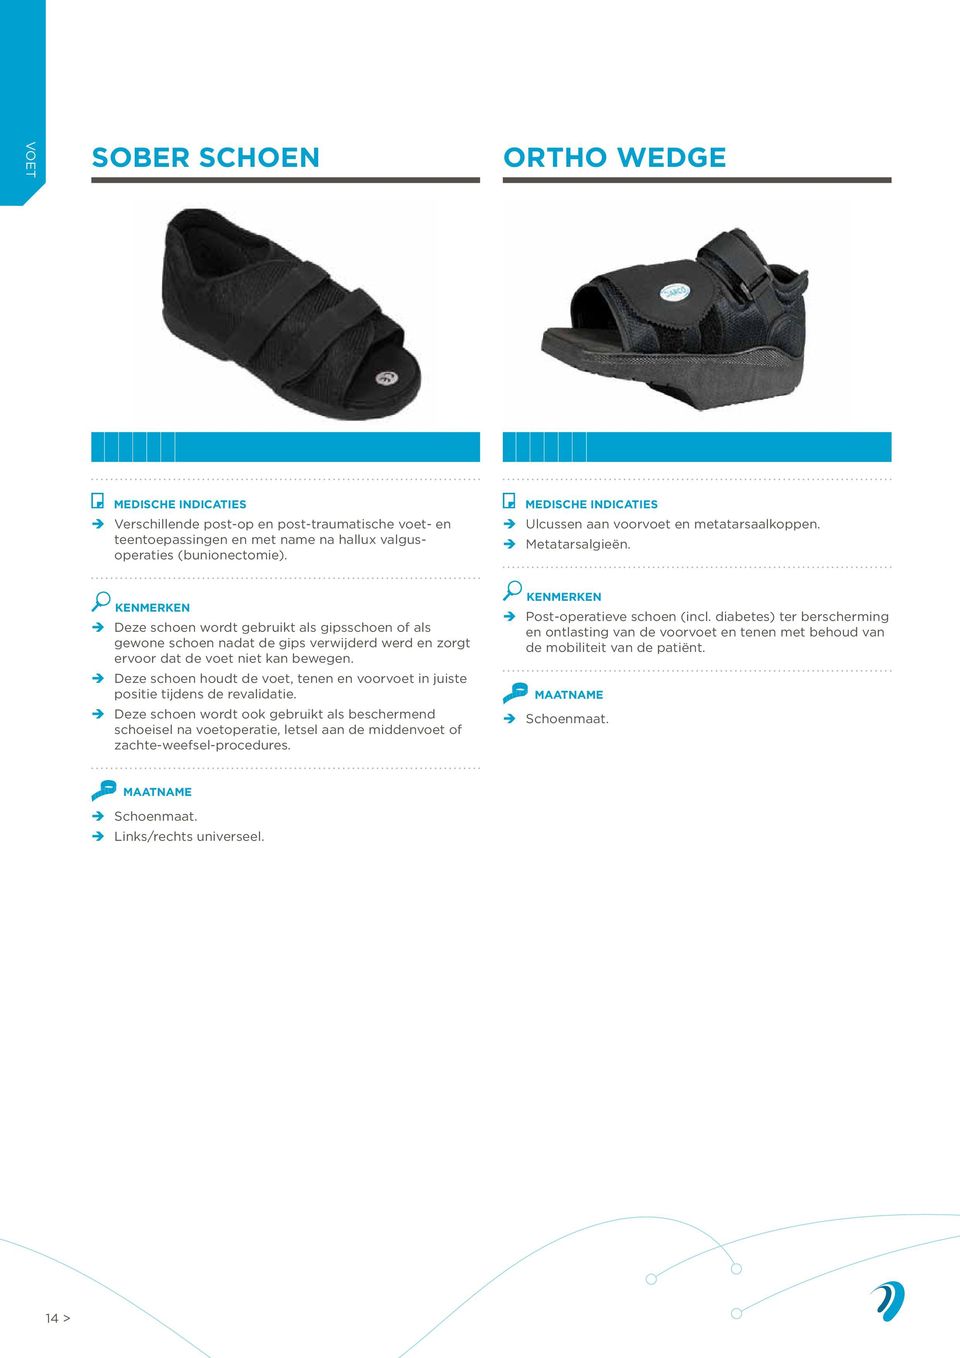 Deze schoen wordt gebruikt als gipsschoen of als gewone schoen nadat de gips verwijderd werd en zorgt ervoor dat de voet niet kan bewegen.